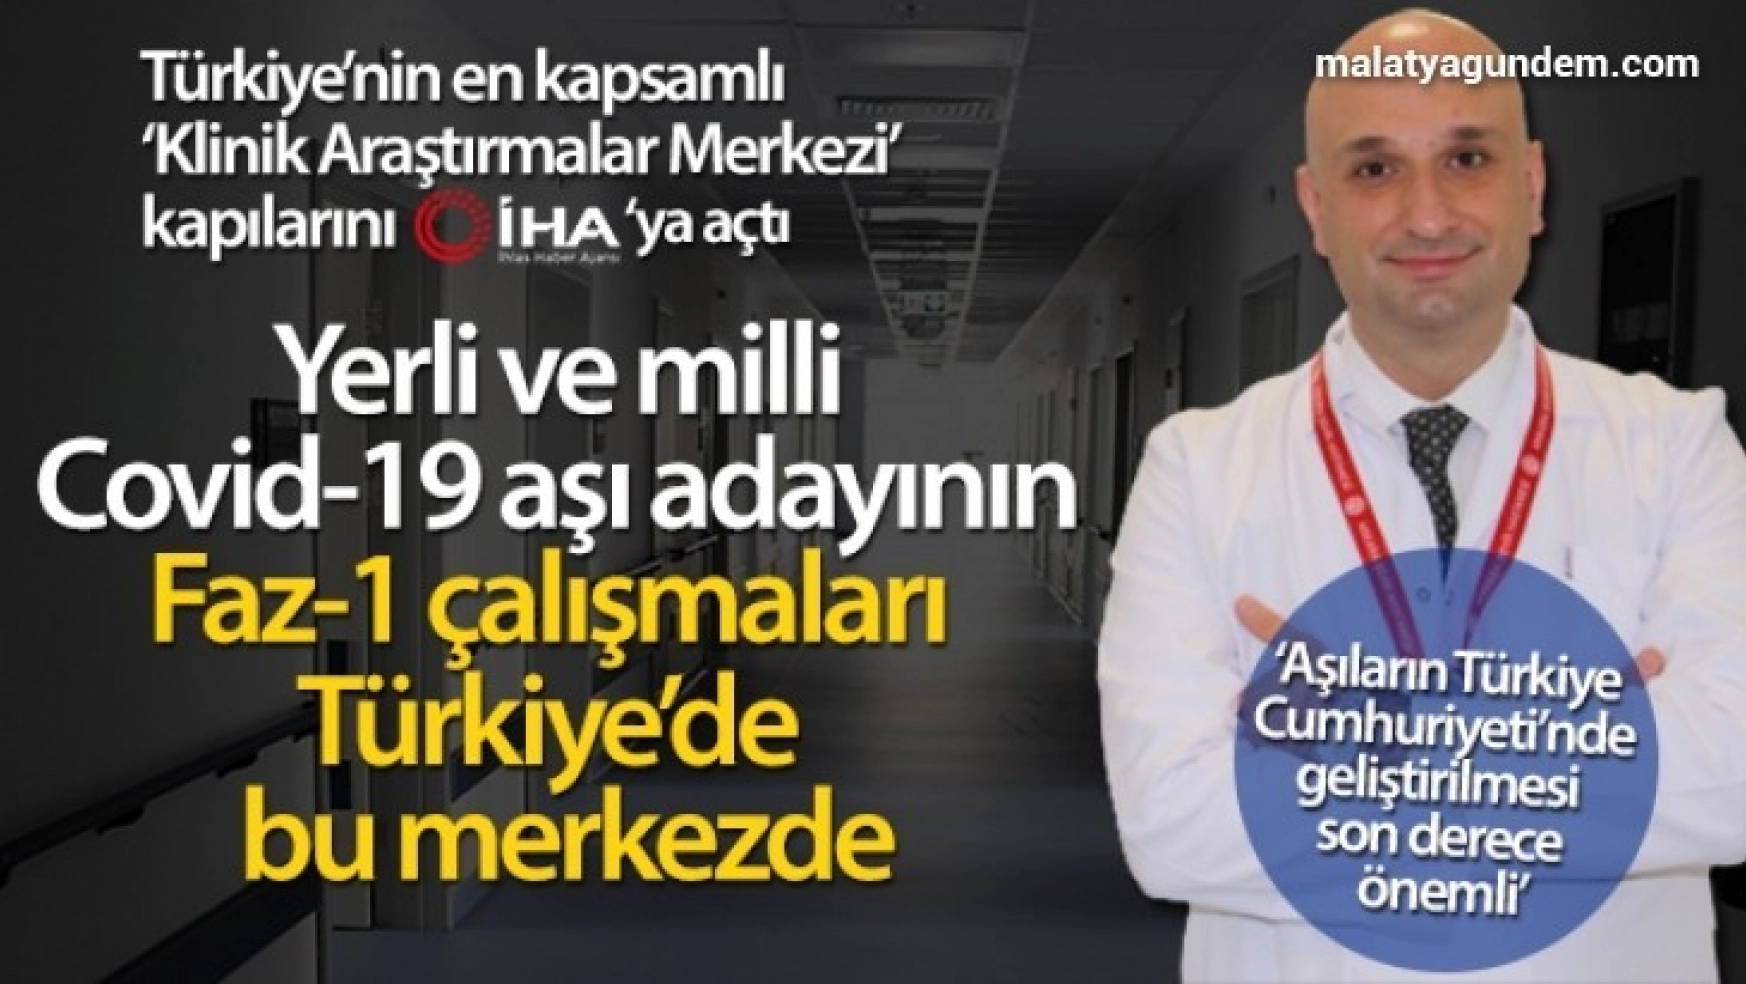 Yerli ve milli Covid-19 aşı adayının Faz-1 çalışmaları Türkiye'de bu merkezde